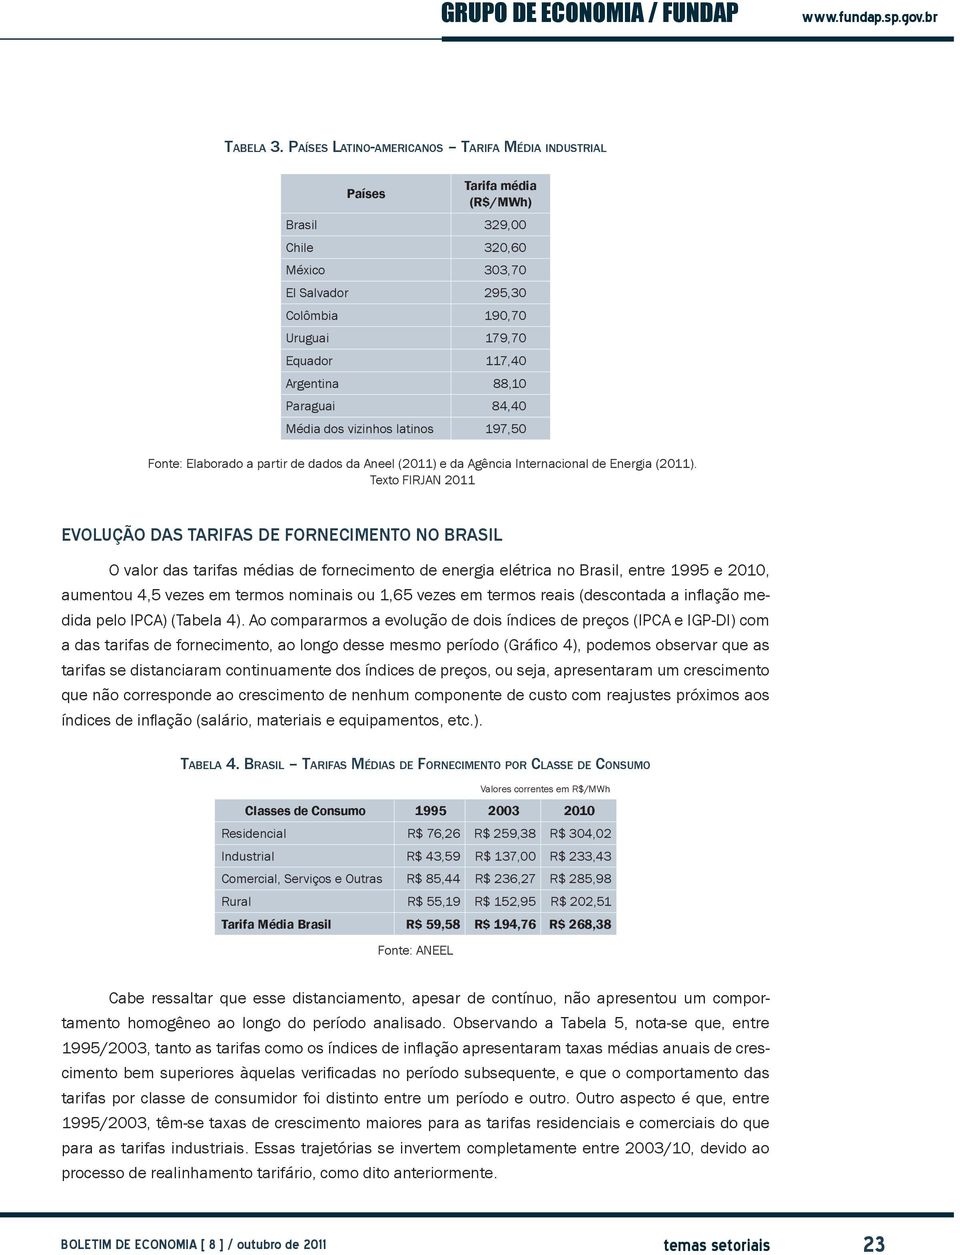 Paraguai 84,40 Média dos vizinhos latinos 197,50 Fonte: Elaborado a partir de dados da Aneel (2011) e da Agência Internacional de Energia (2011).